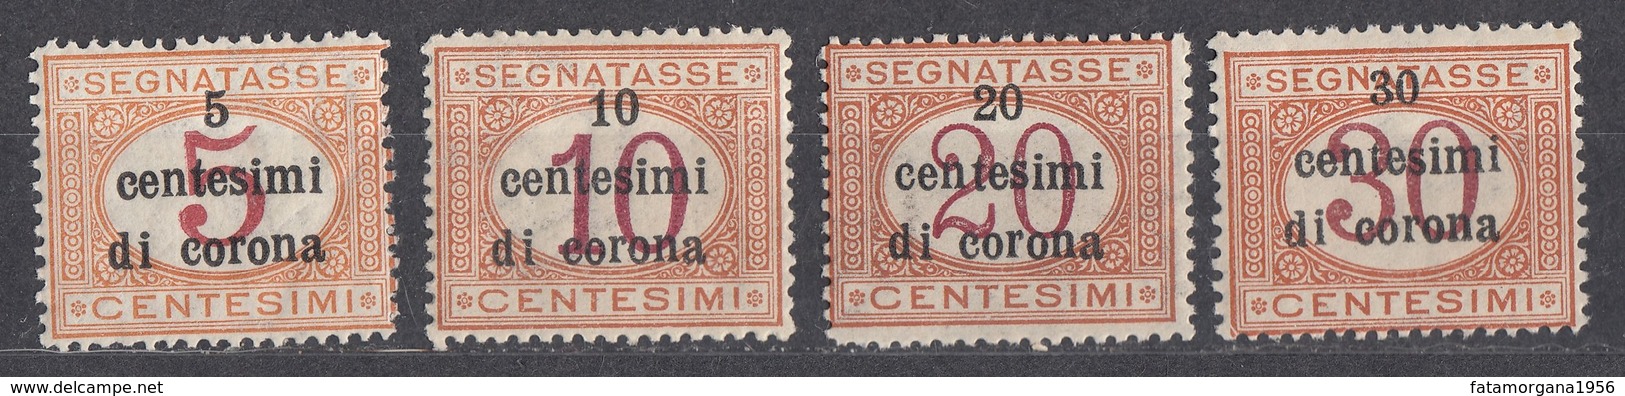 VENEZIA GIULIA, EMISSIONI GENERALI - 1919 - Lotto 4 Valori Nuovi MH Segnatasse Unificato 1/4. - Venezia Giulia